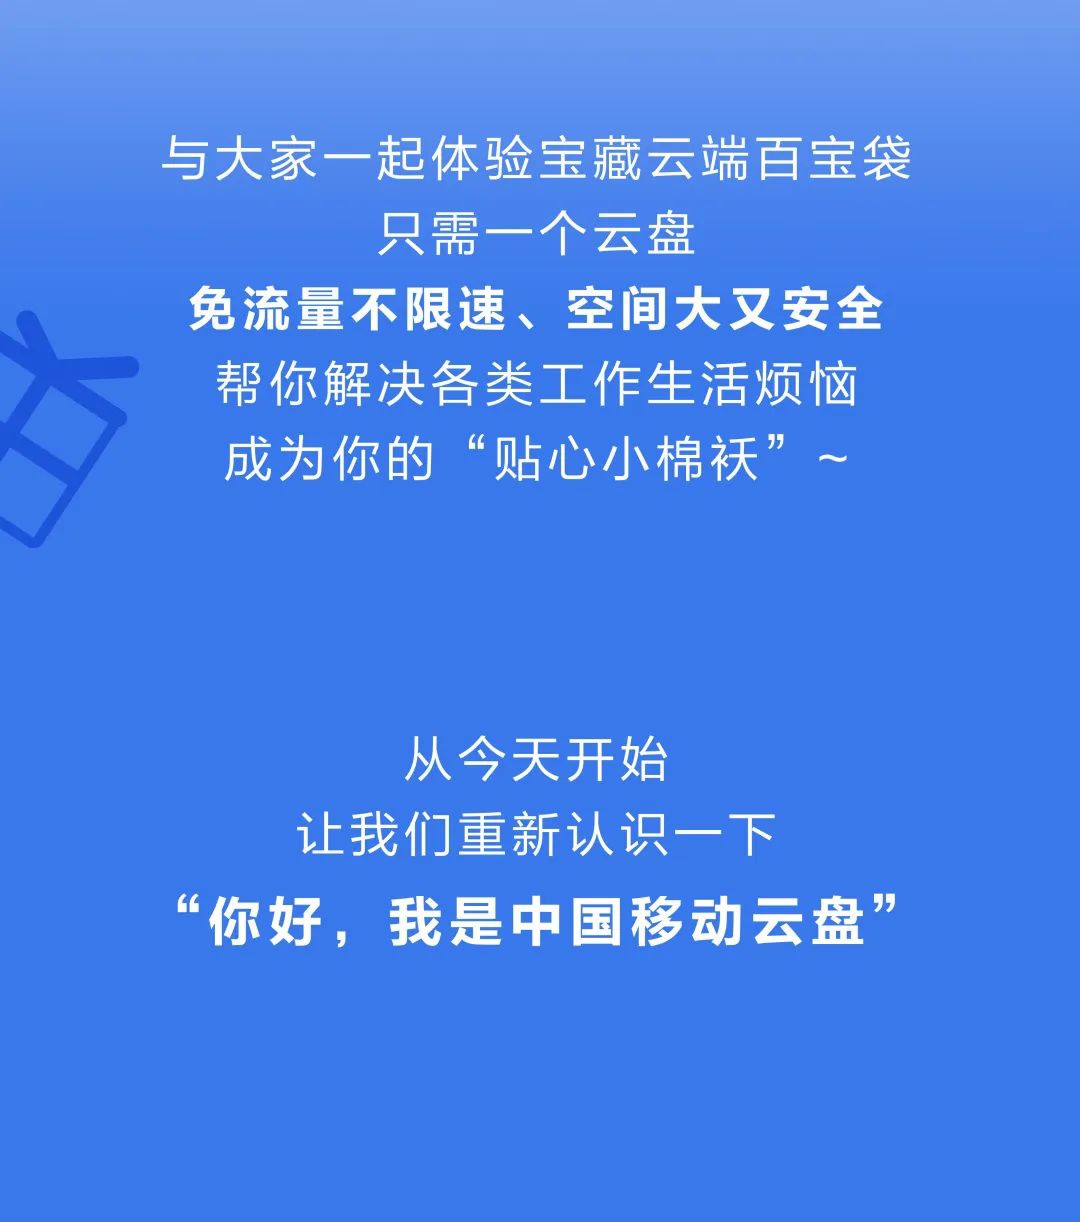 和彩云网盘正式更名为中国移动云盘：不限速，送 3 个月会员